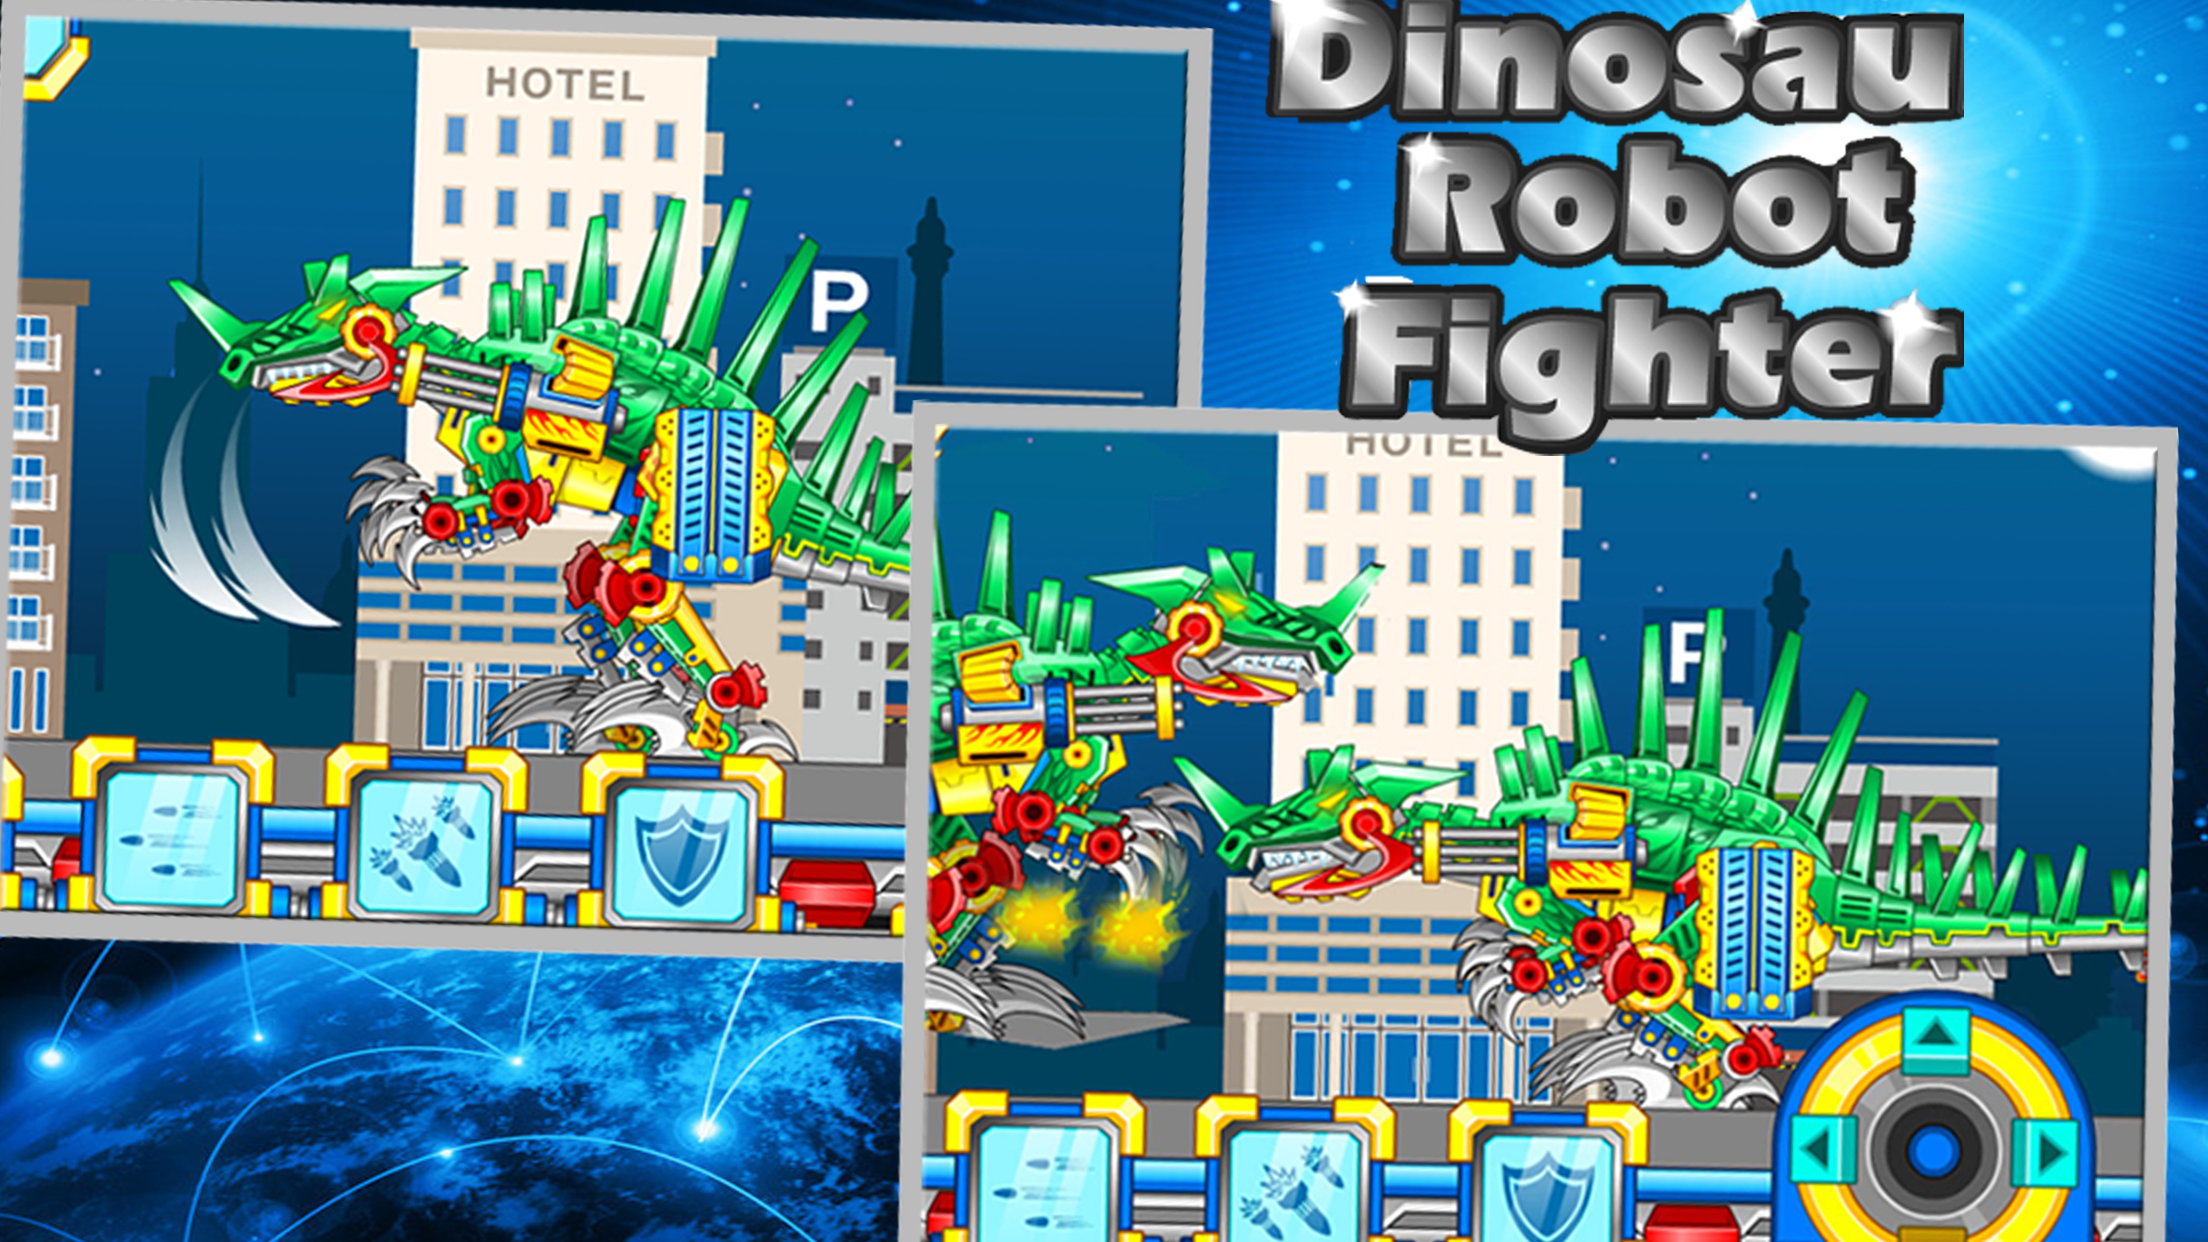 Dinosaur Robot Fighter